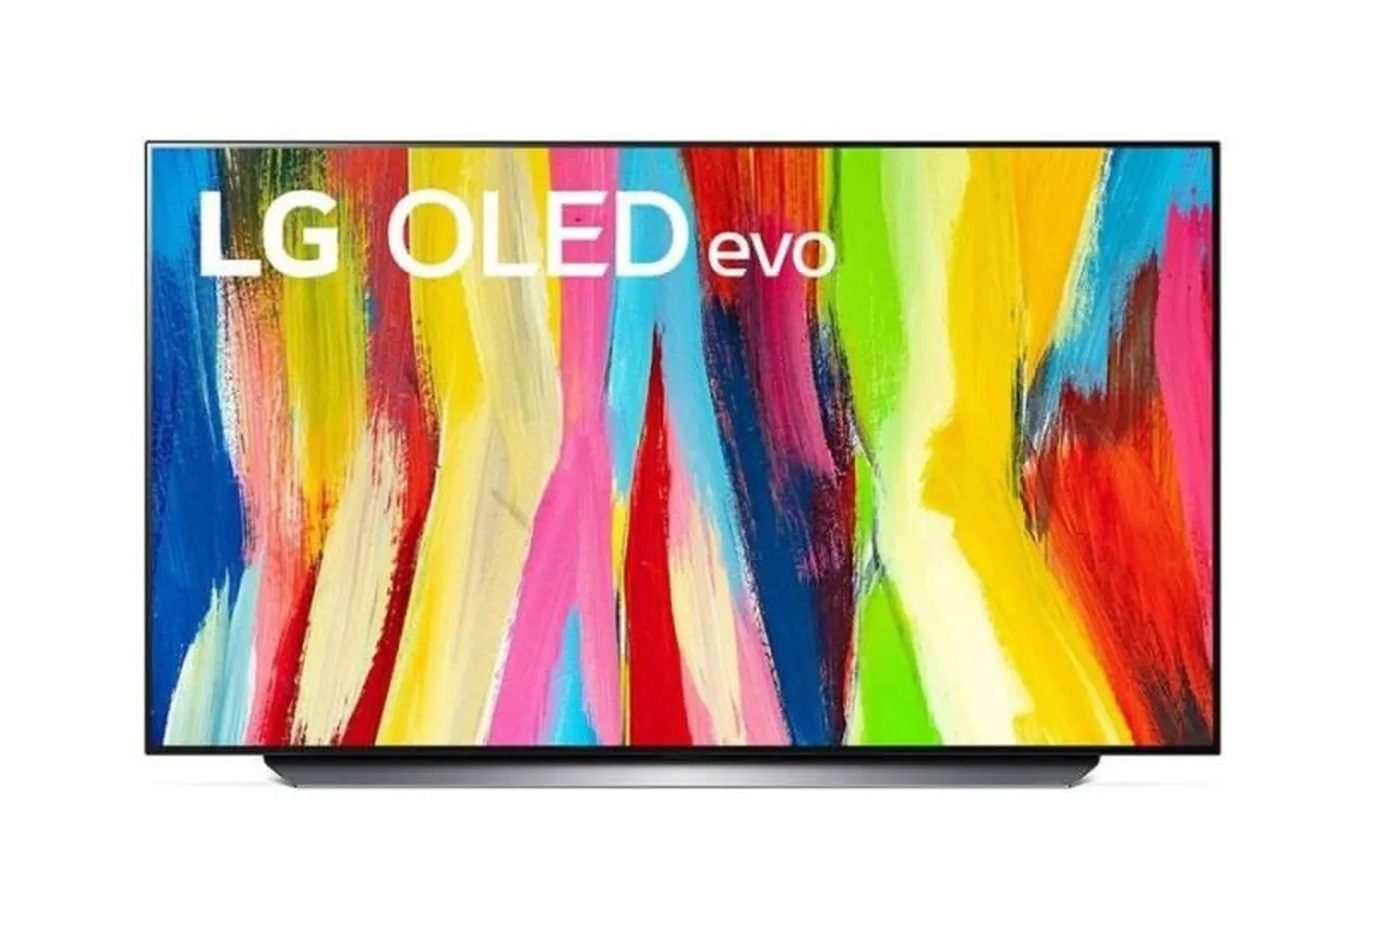 Prix inédit sur cette TV 4K OLED haut de gamme LG C2, vous n'allez pas en revenir 😱